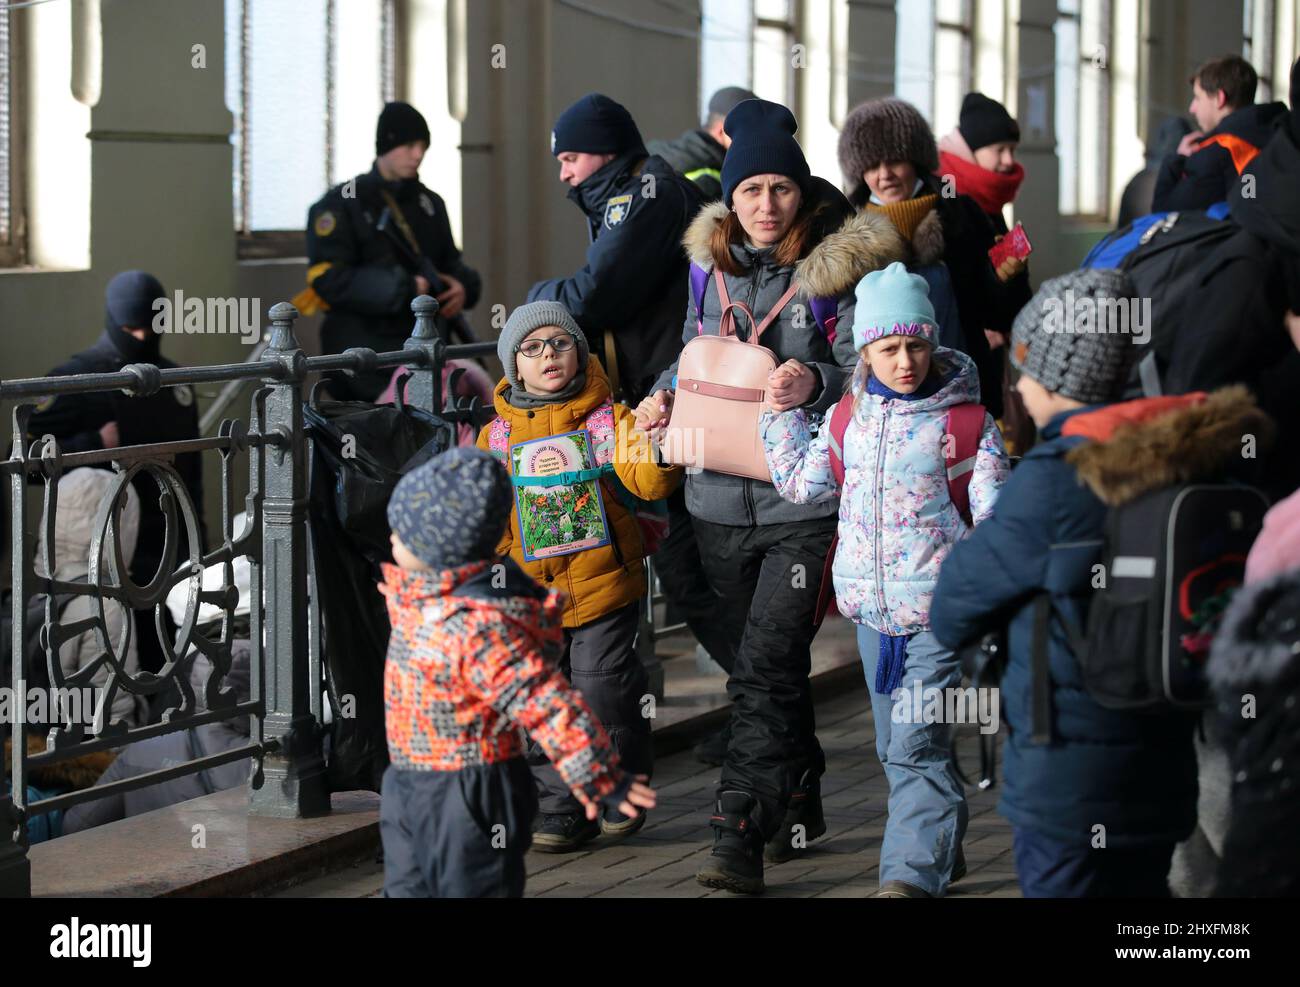 LVIV, UKRAINE - 11. MÄRZ 2022 - Eine Frau und Kinder werden auf der Plattform abgebildet, während Menschen, die vor der russischen Invasion fliehen, auf einen Evakuierungszug warten Stockfoto